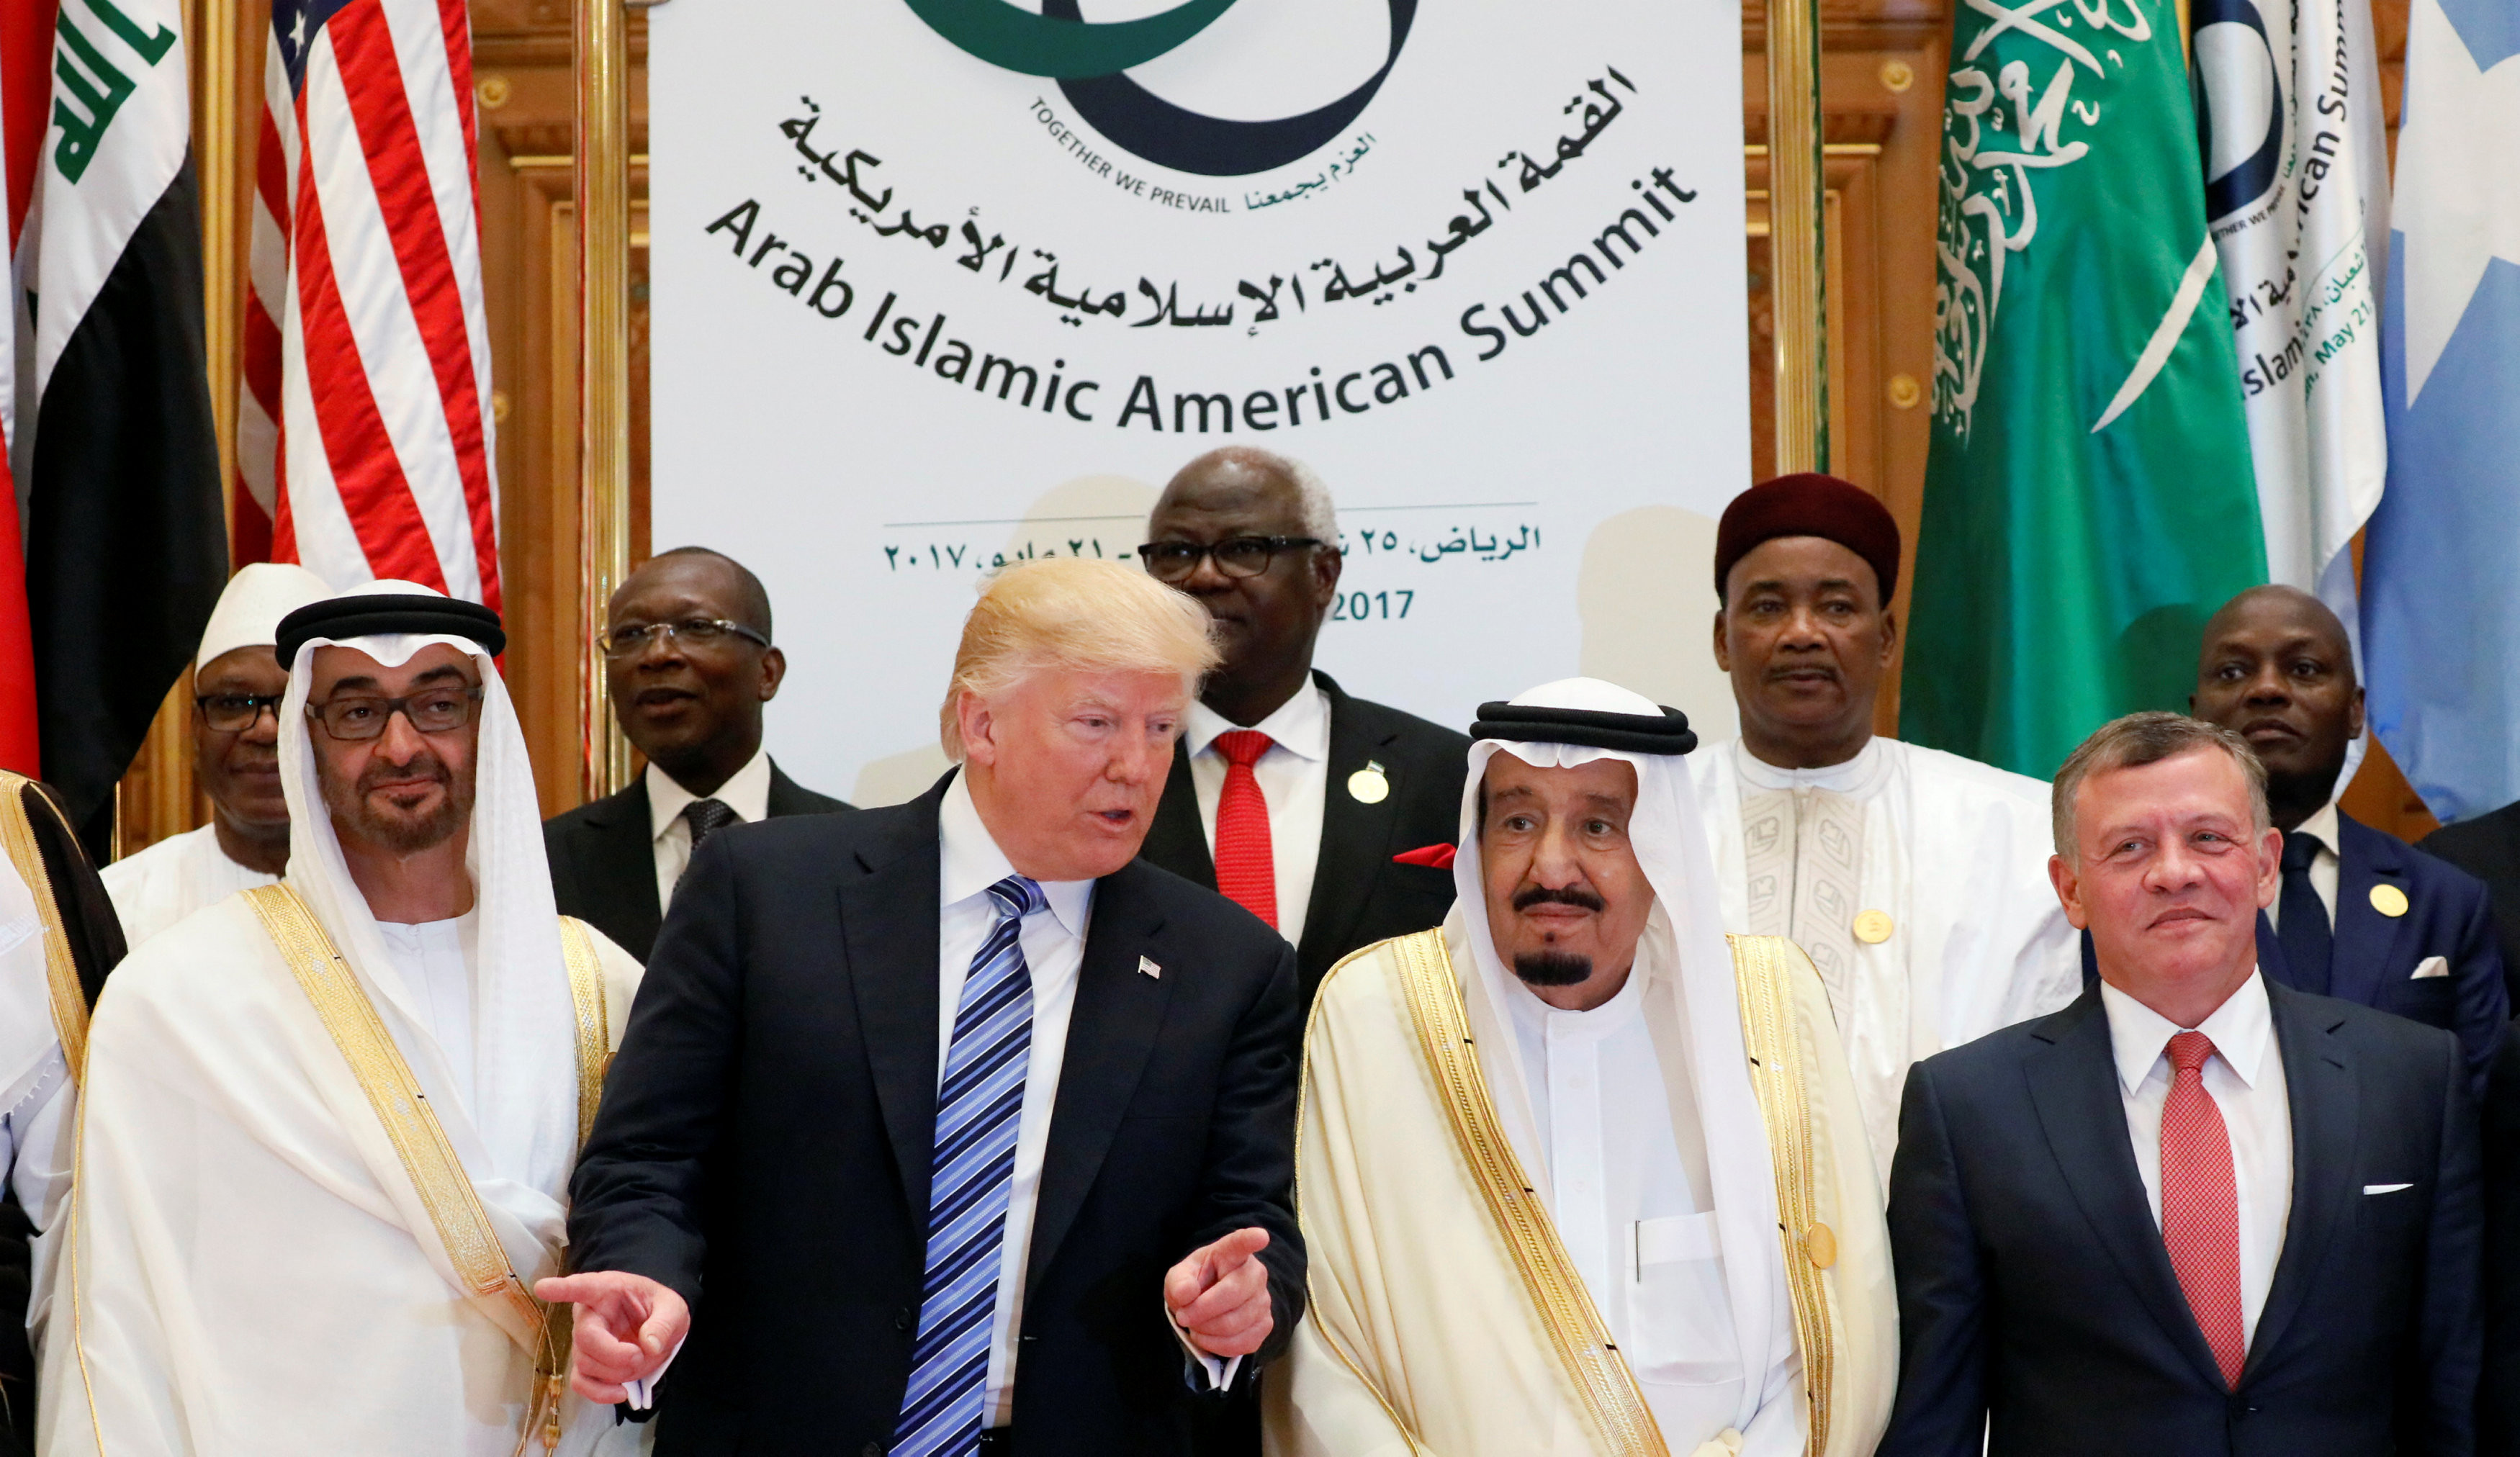 



Президент США Дональд Трамп и король Саудовской Аравии Салман бен Абдель Азиз Аль Сауд. Фото:&nbsp;&copy;REUTERS/Jonathan Ernst




